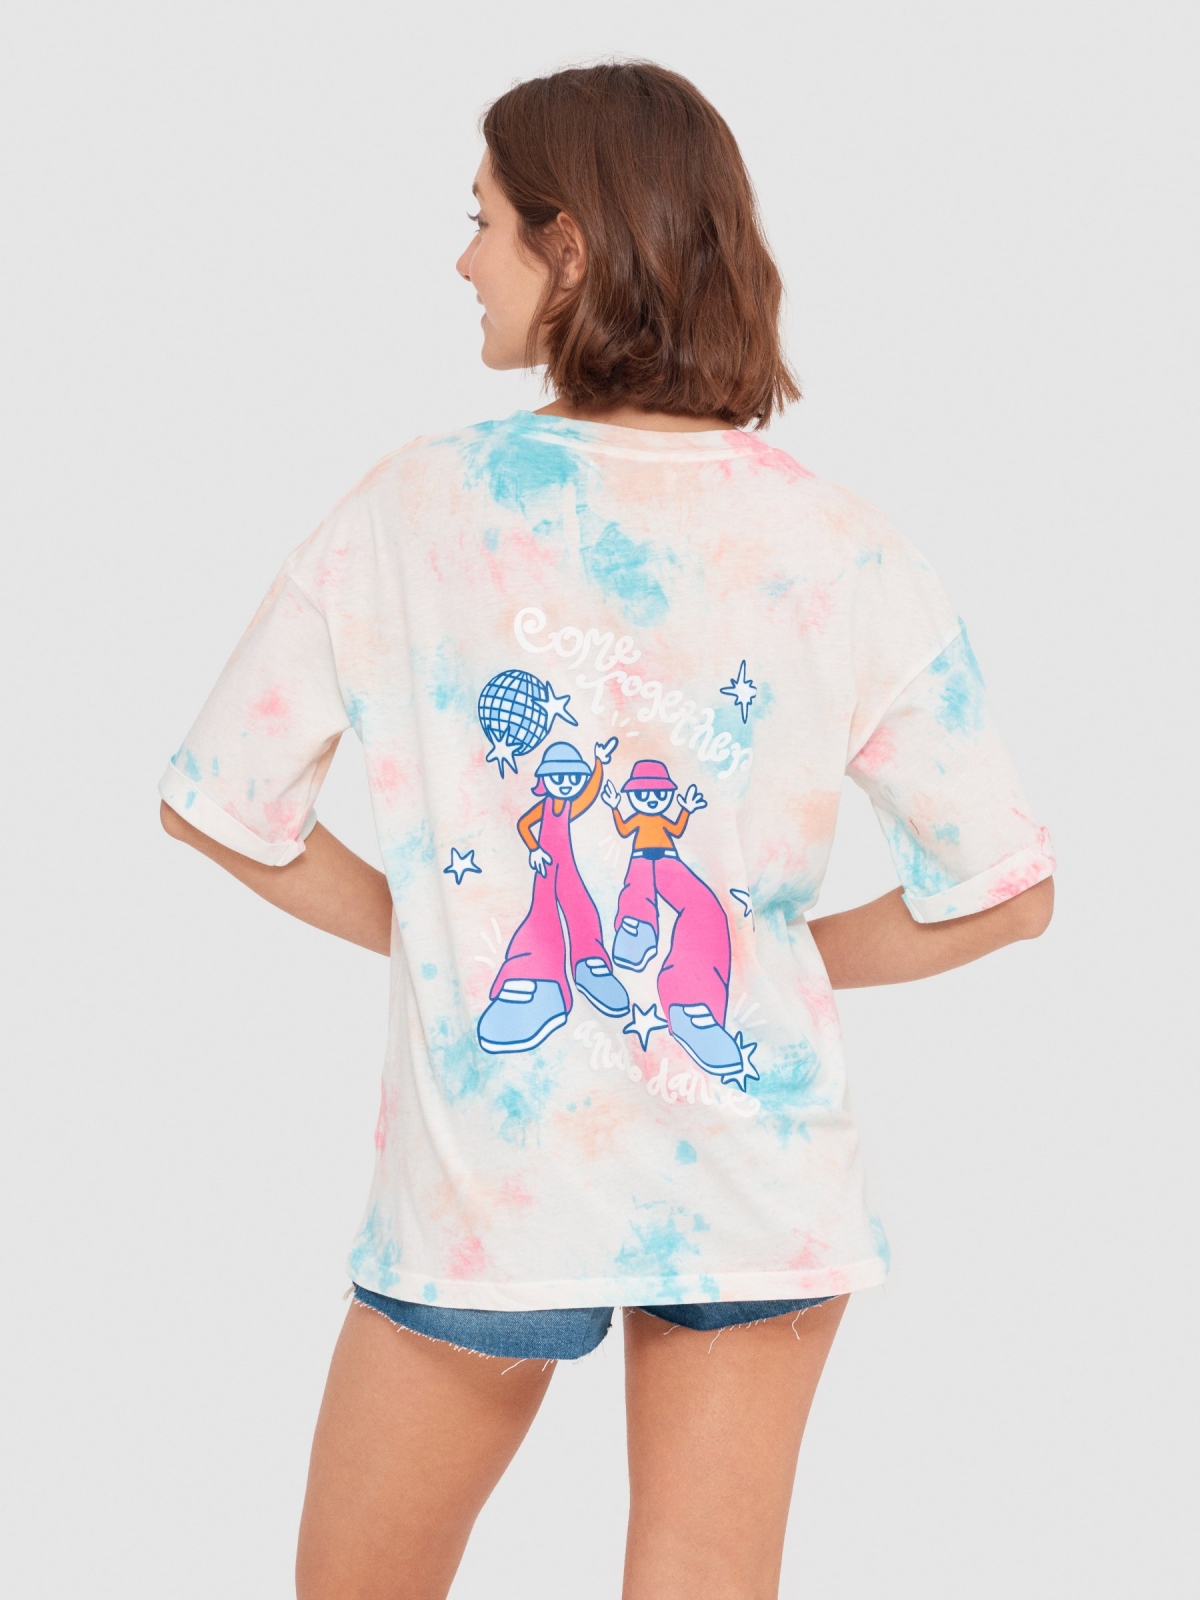 Camiseta tie dye con ilustración rosa claro vista media trasera